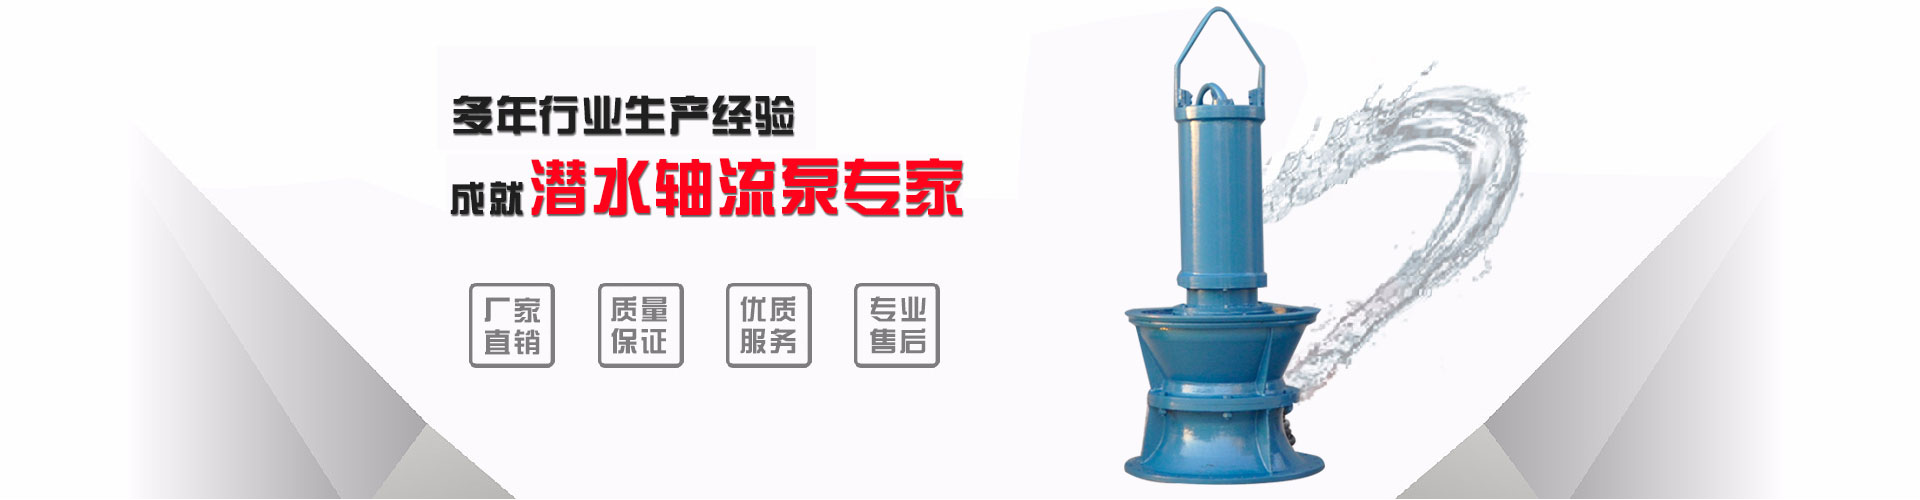 昆明型号浮筒泵厂_黄山浮筒泵